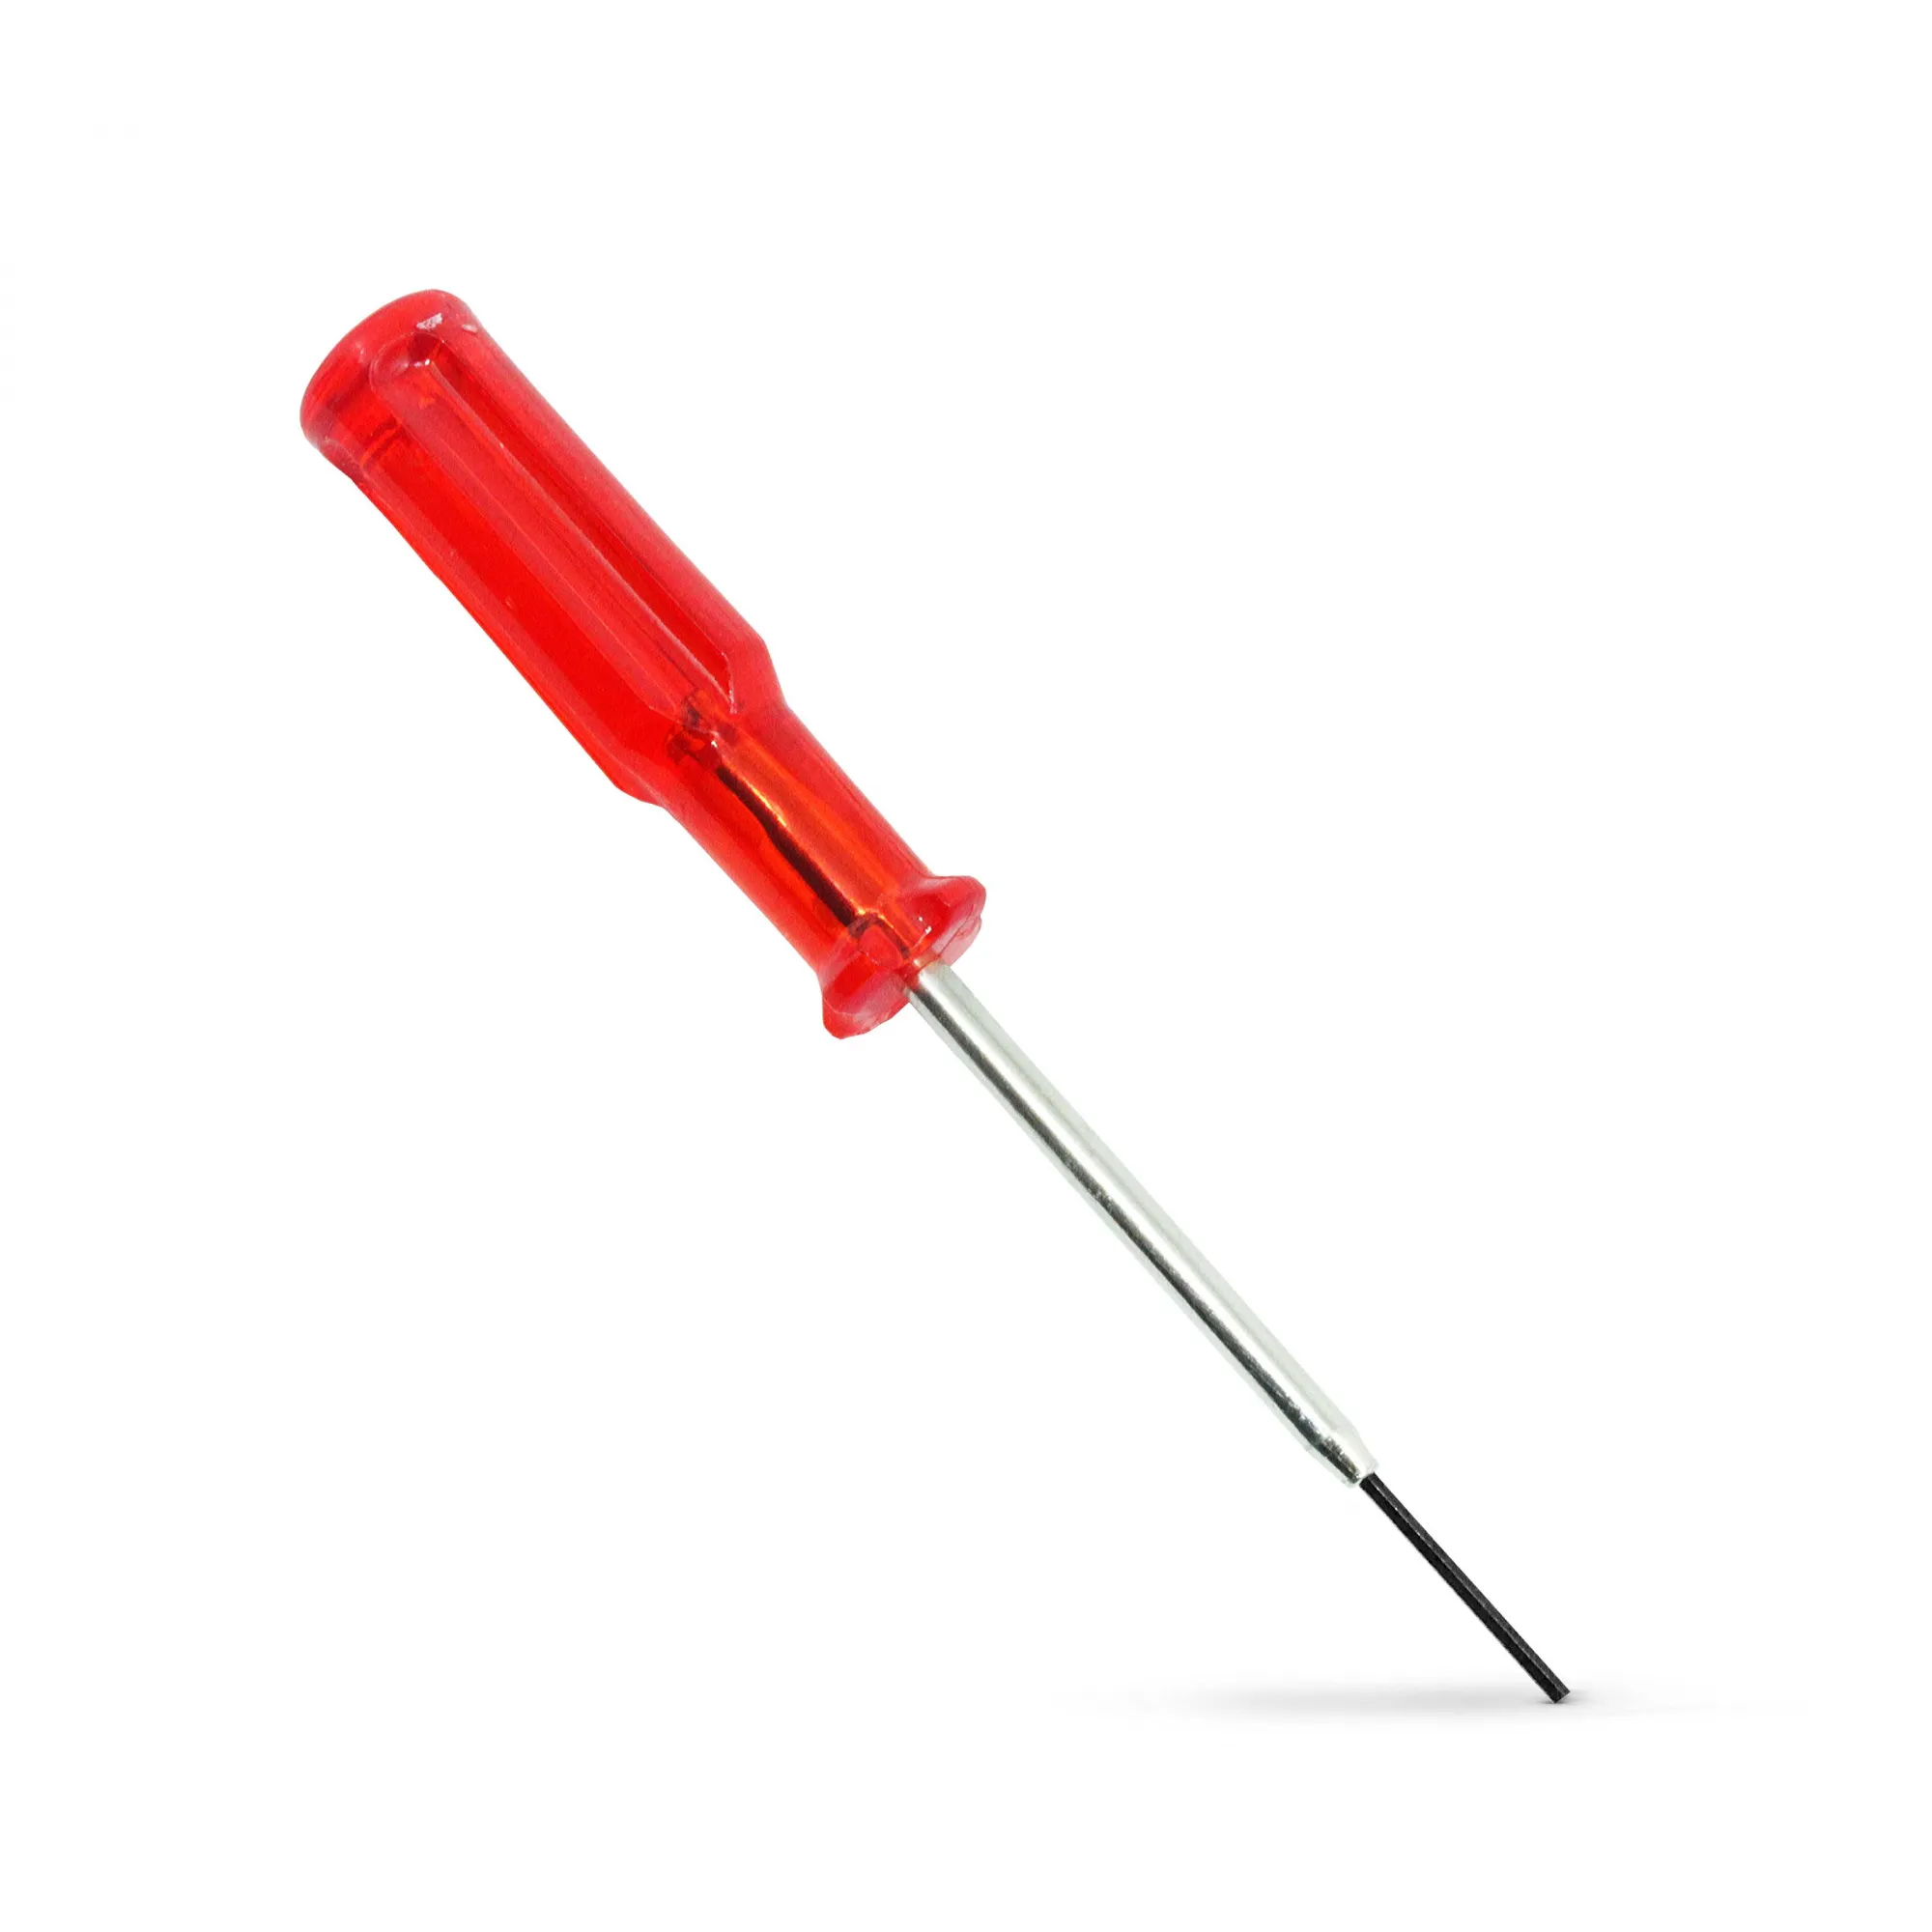 Chave allen para troca de parafuso de agulha 1,5mm - cabo vermelho